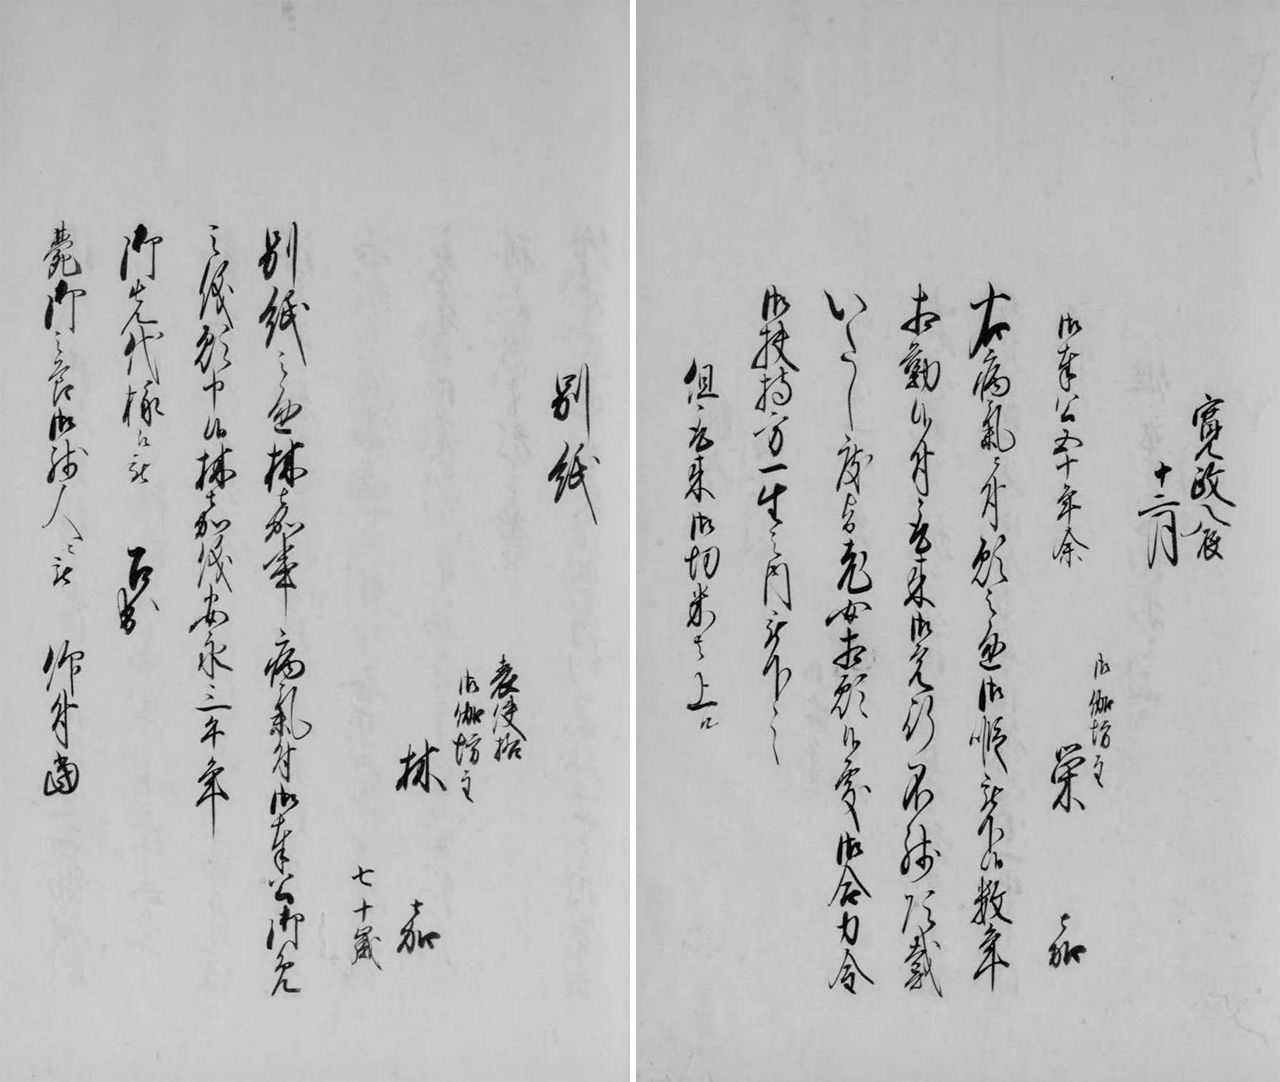 Les noms et les âges des otogi-bôzu figurent sur une liste de domestiques datant de 1805-1810. La page de gauche traîte d'un serviteur âgé de 70 ans et celle de droite d'un autre, qui « a servi pendant 50 annés », ce qui montre que tous deux avaient un âge avancé. (Avec l'aimable autorisation des Archives nationales du Japon)